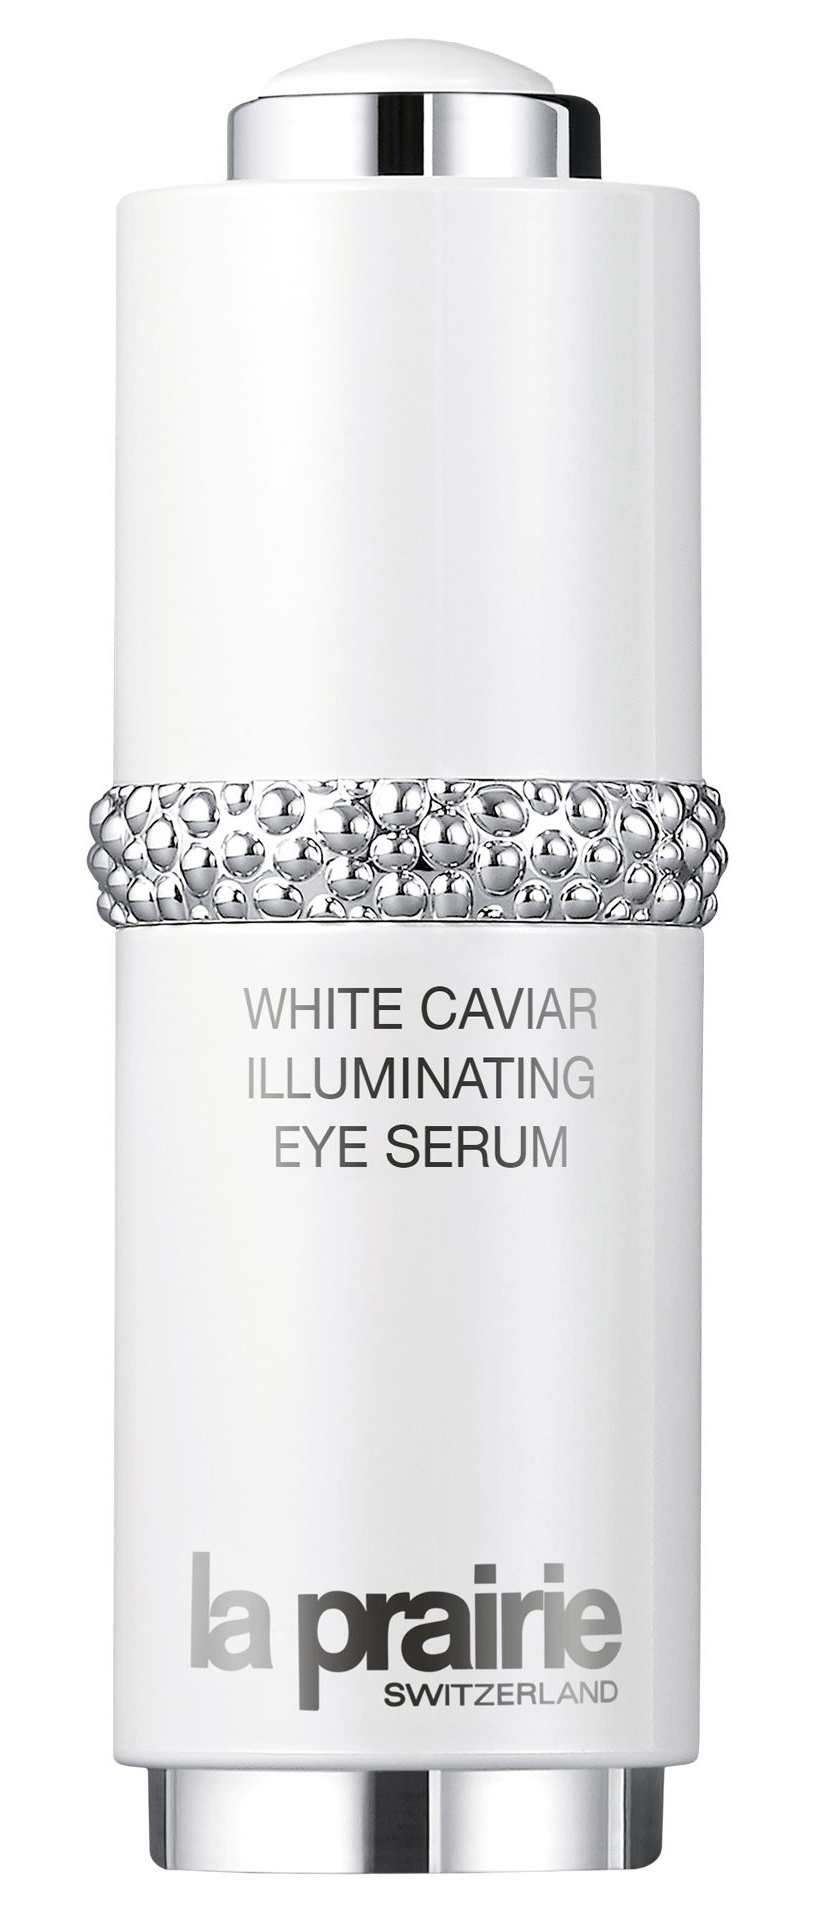 La Prairie White Caviar Illuminating Eye Serum